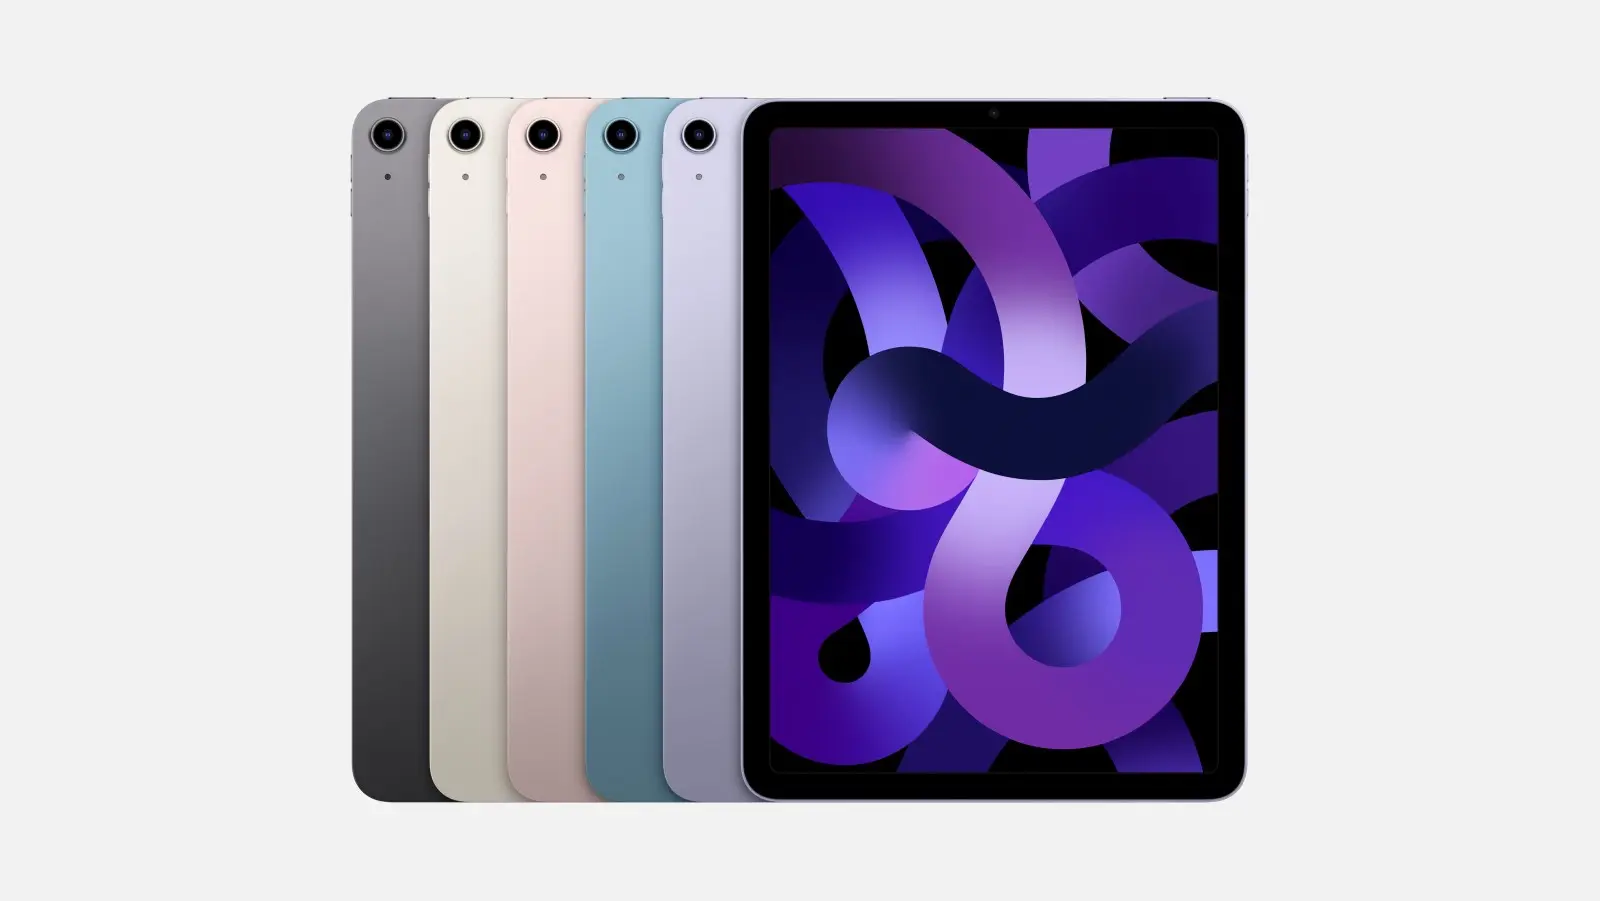 Apple anuncia el iPad Air 5 con chip M1, conectividad 5G y opcion de color morado